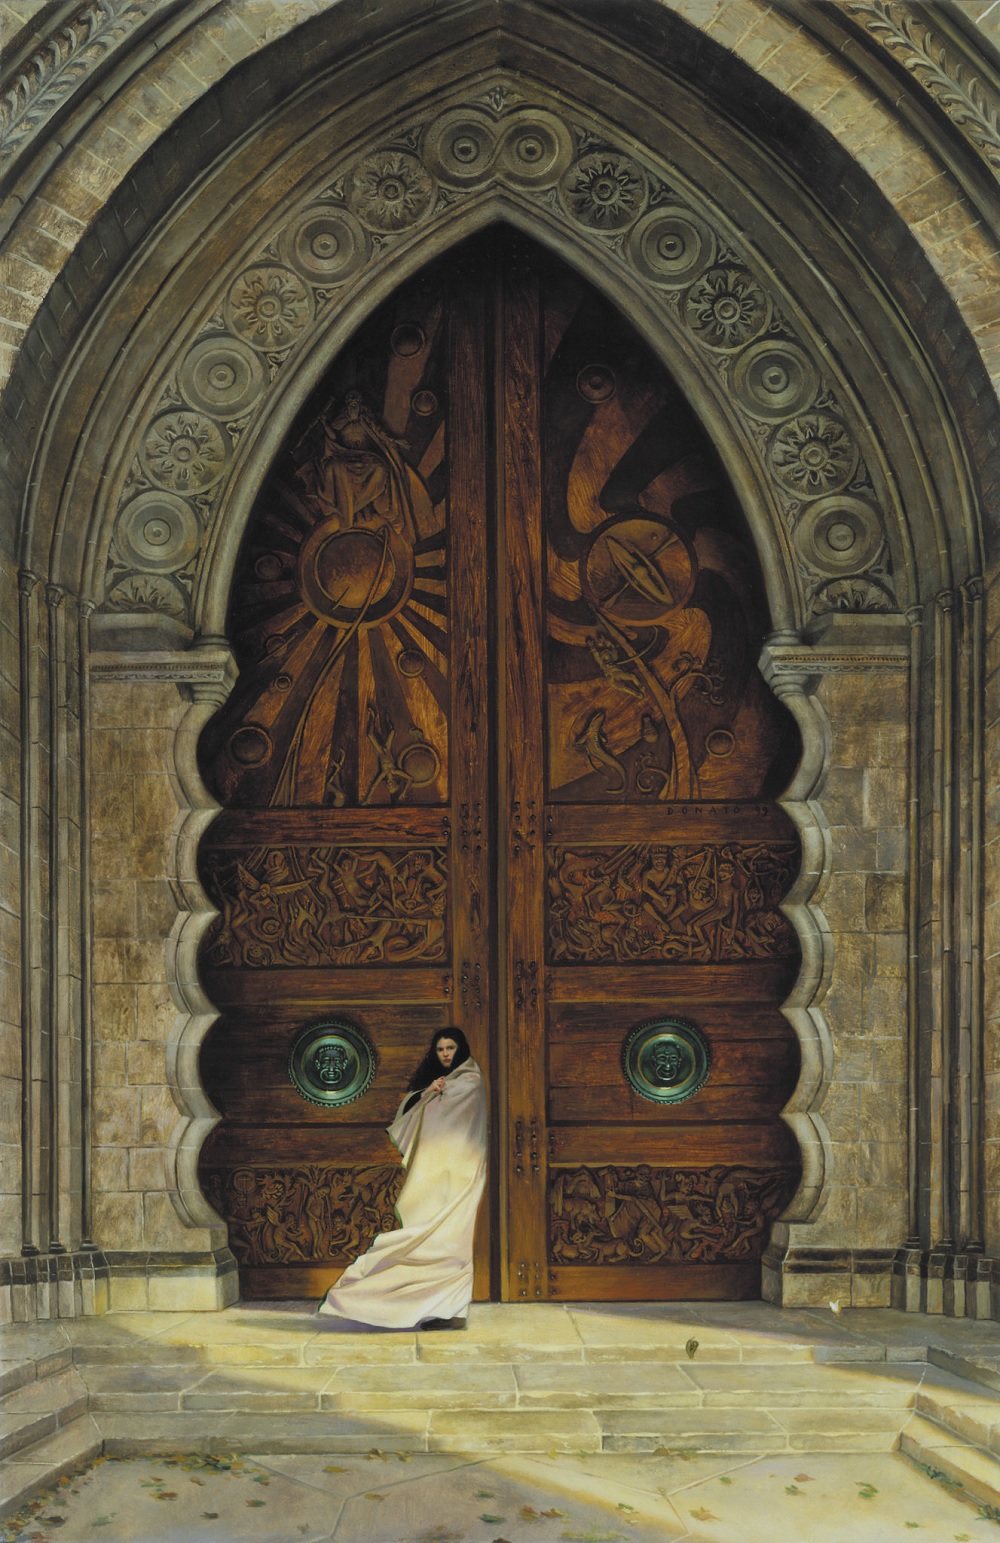 Открытые красивые двери. Художник Донато Джанкола. Стиль Урнес врата. Донато Джанкола Властелин колец. Дверь в средневековом стиле.